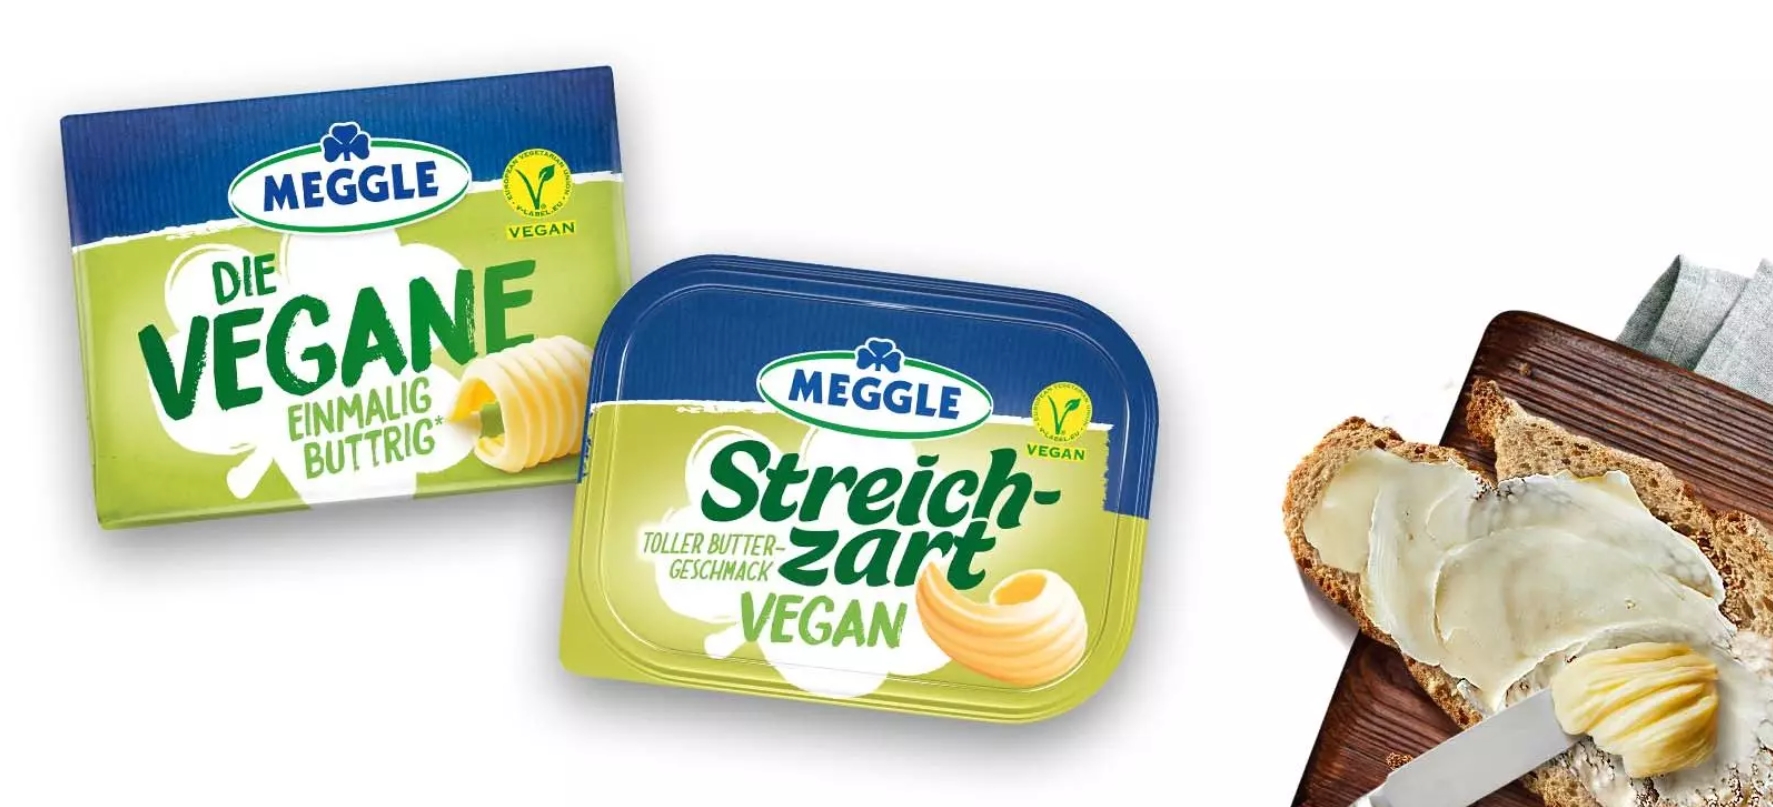 Vegane Produkte von Meggle – Vegane Produkte